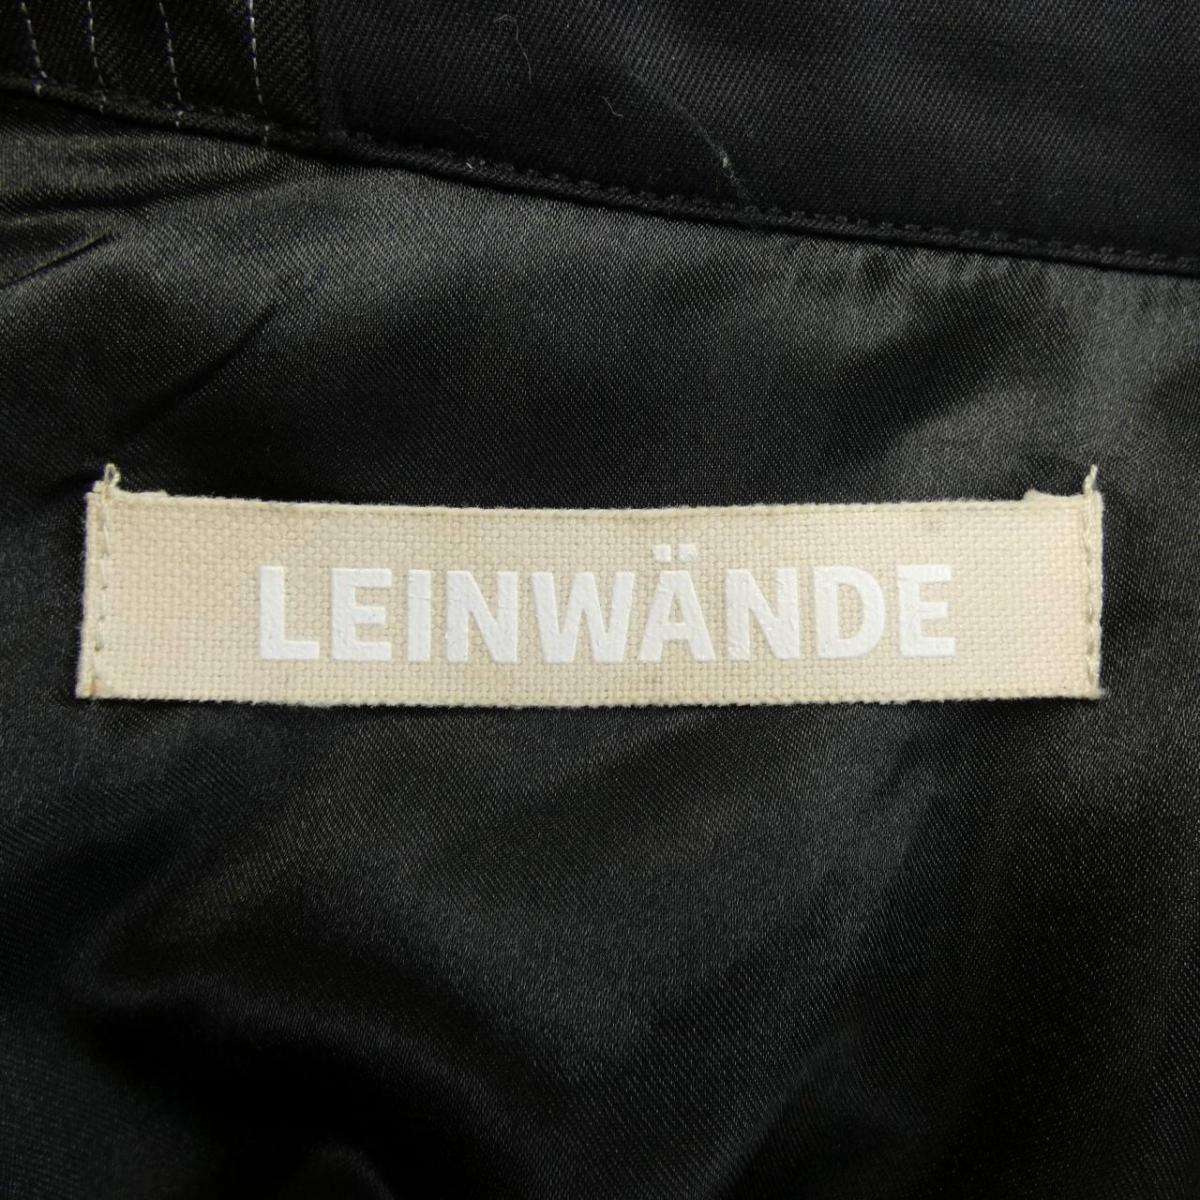 LEINWANDE コート - 3